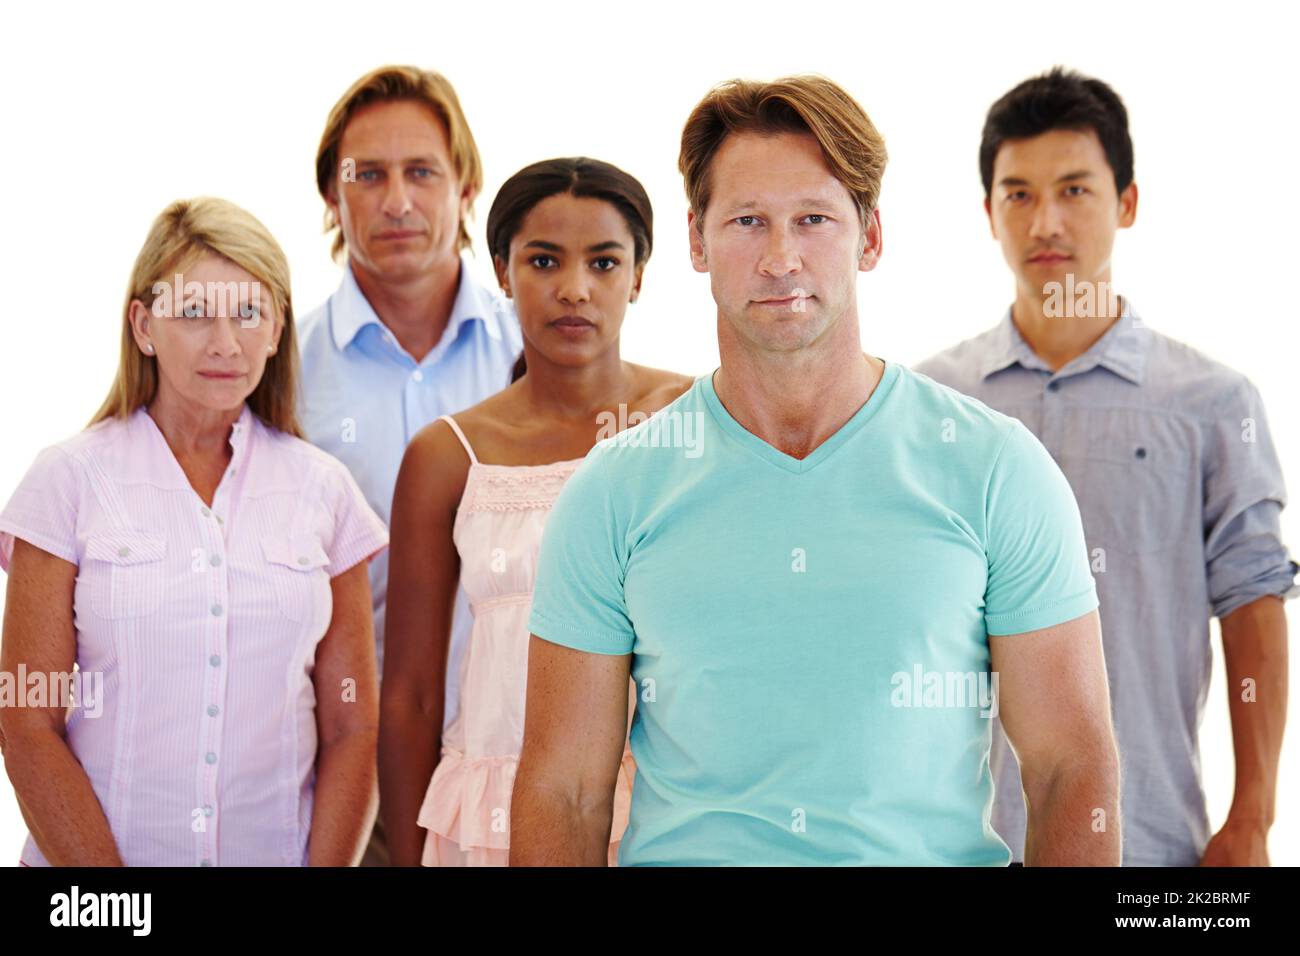 Sich für die Einheit zu stellen. Fünf Erwachsene unterschiedlichen Alters und Ethnien stehen in einer Gruppe mit ernsten Ausdrücken. Stockfoto